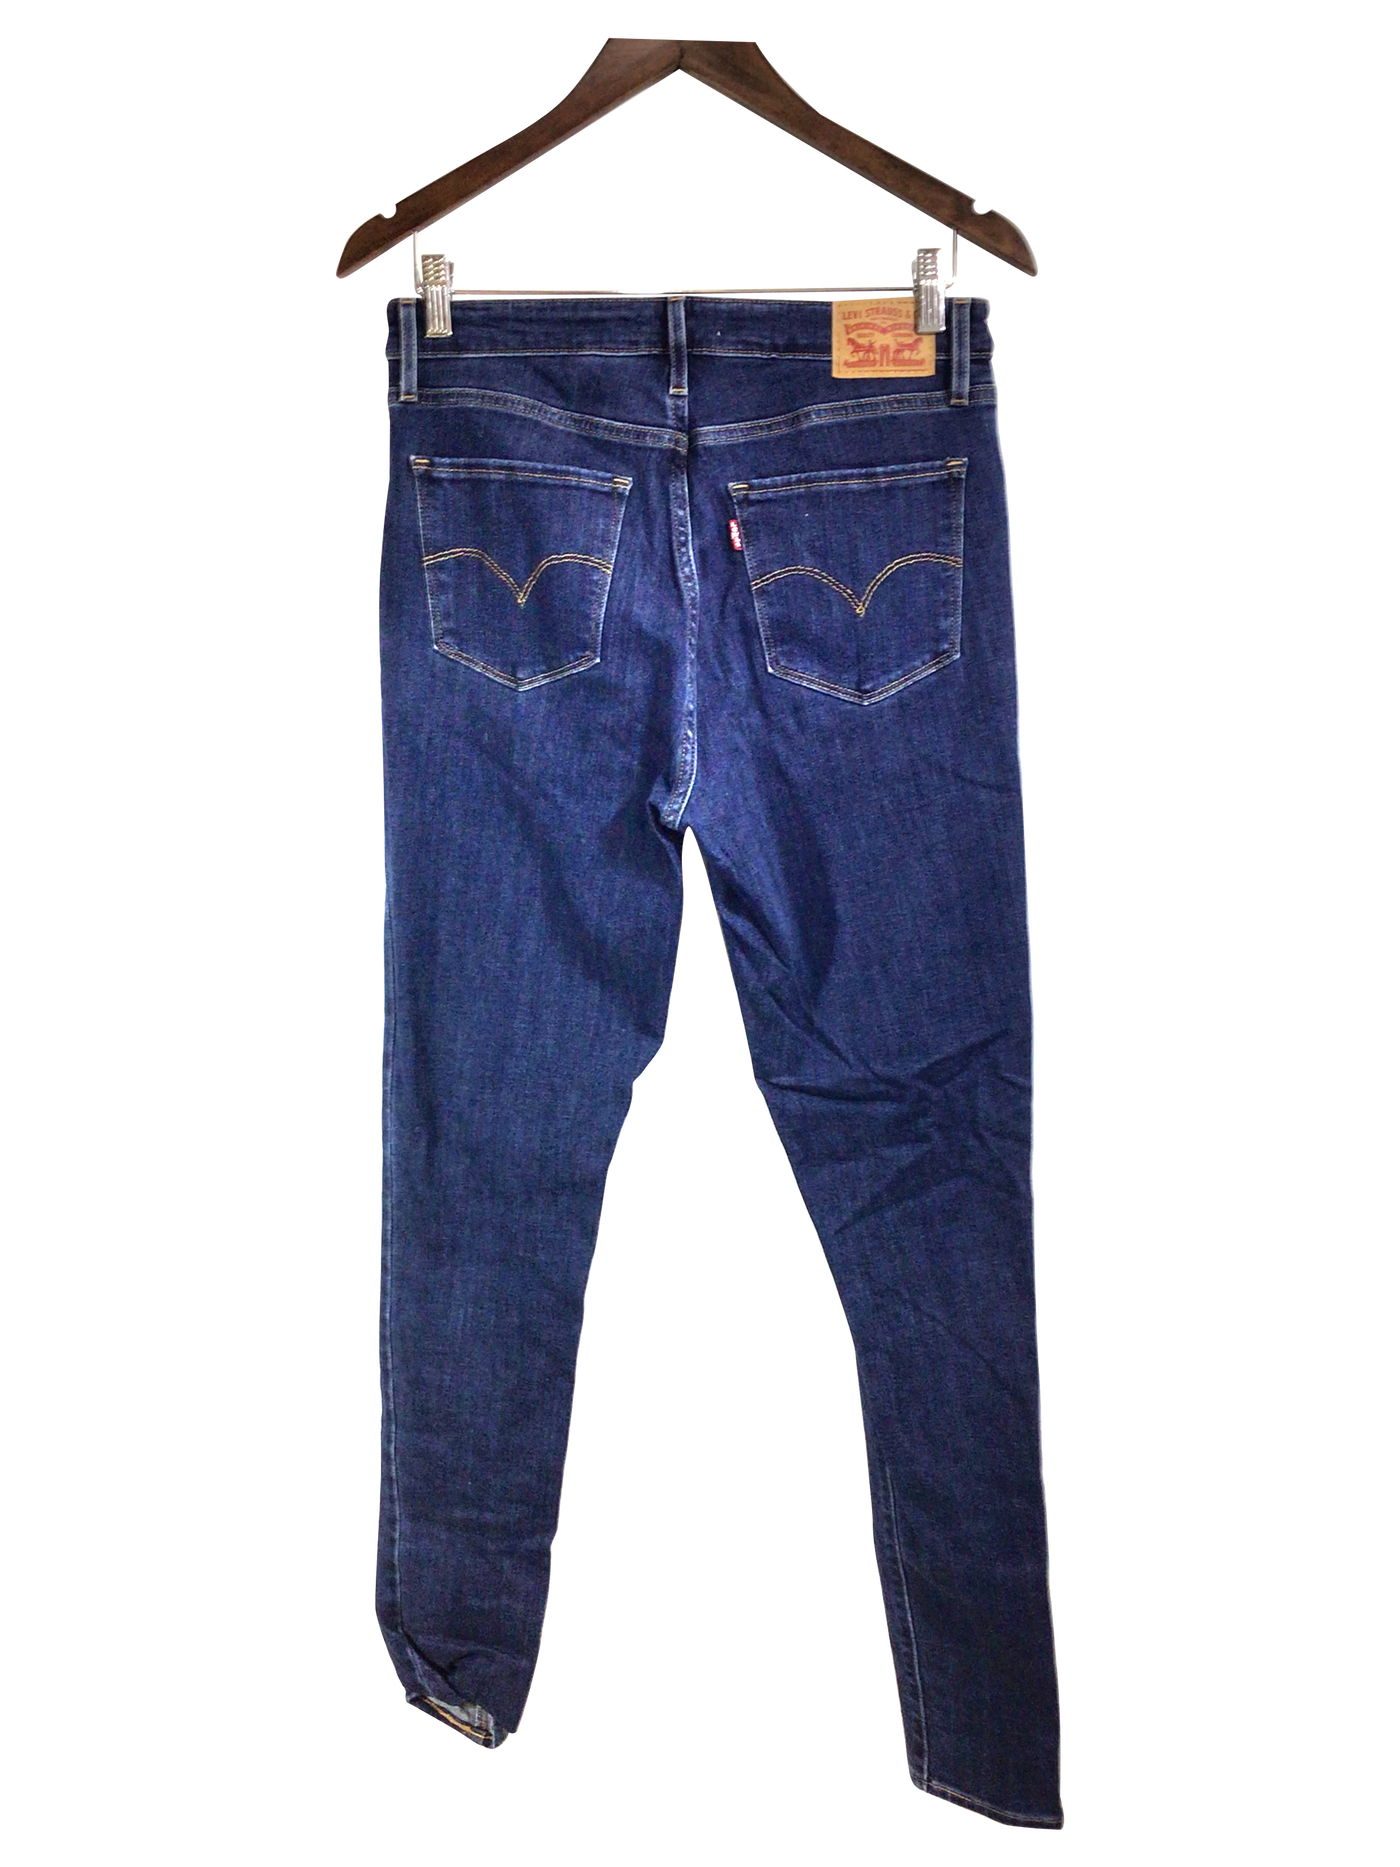 LEVI'S Women Straight-Legged Jeans Regular fit in Blue - Size 30x32 | 23 $ KOOP